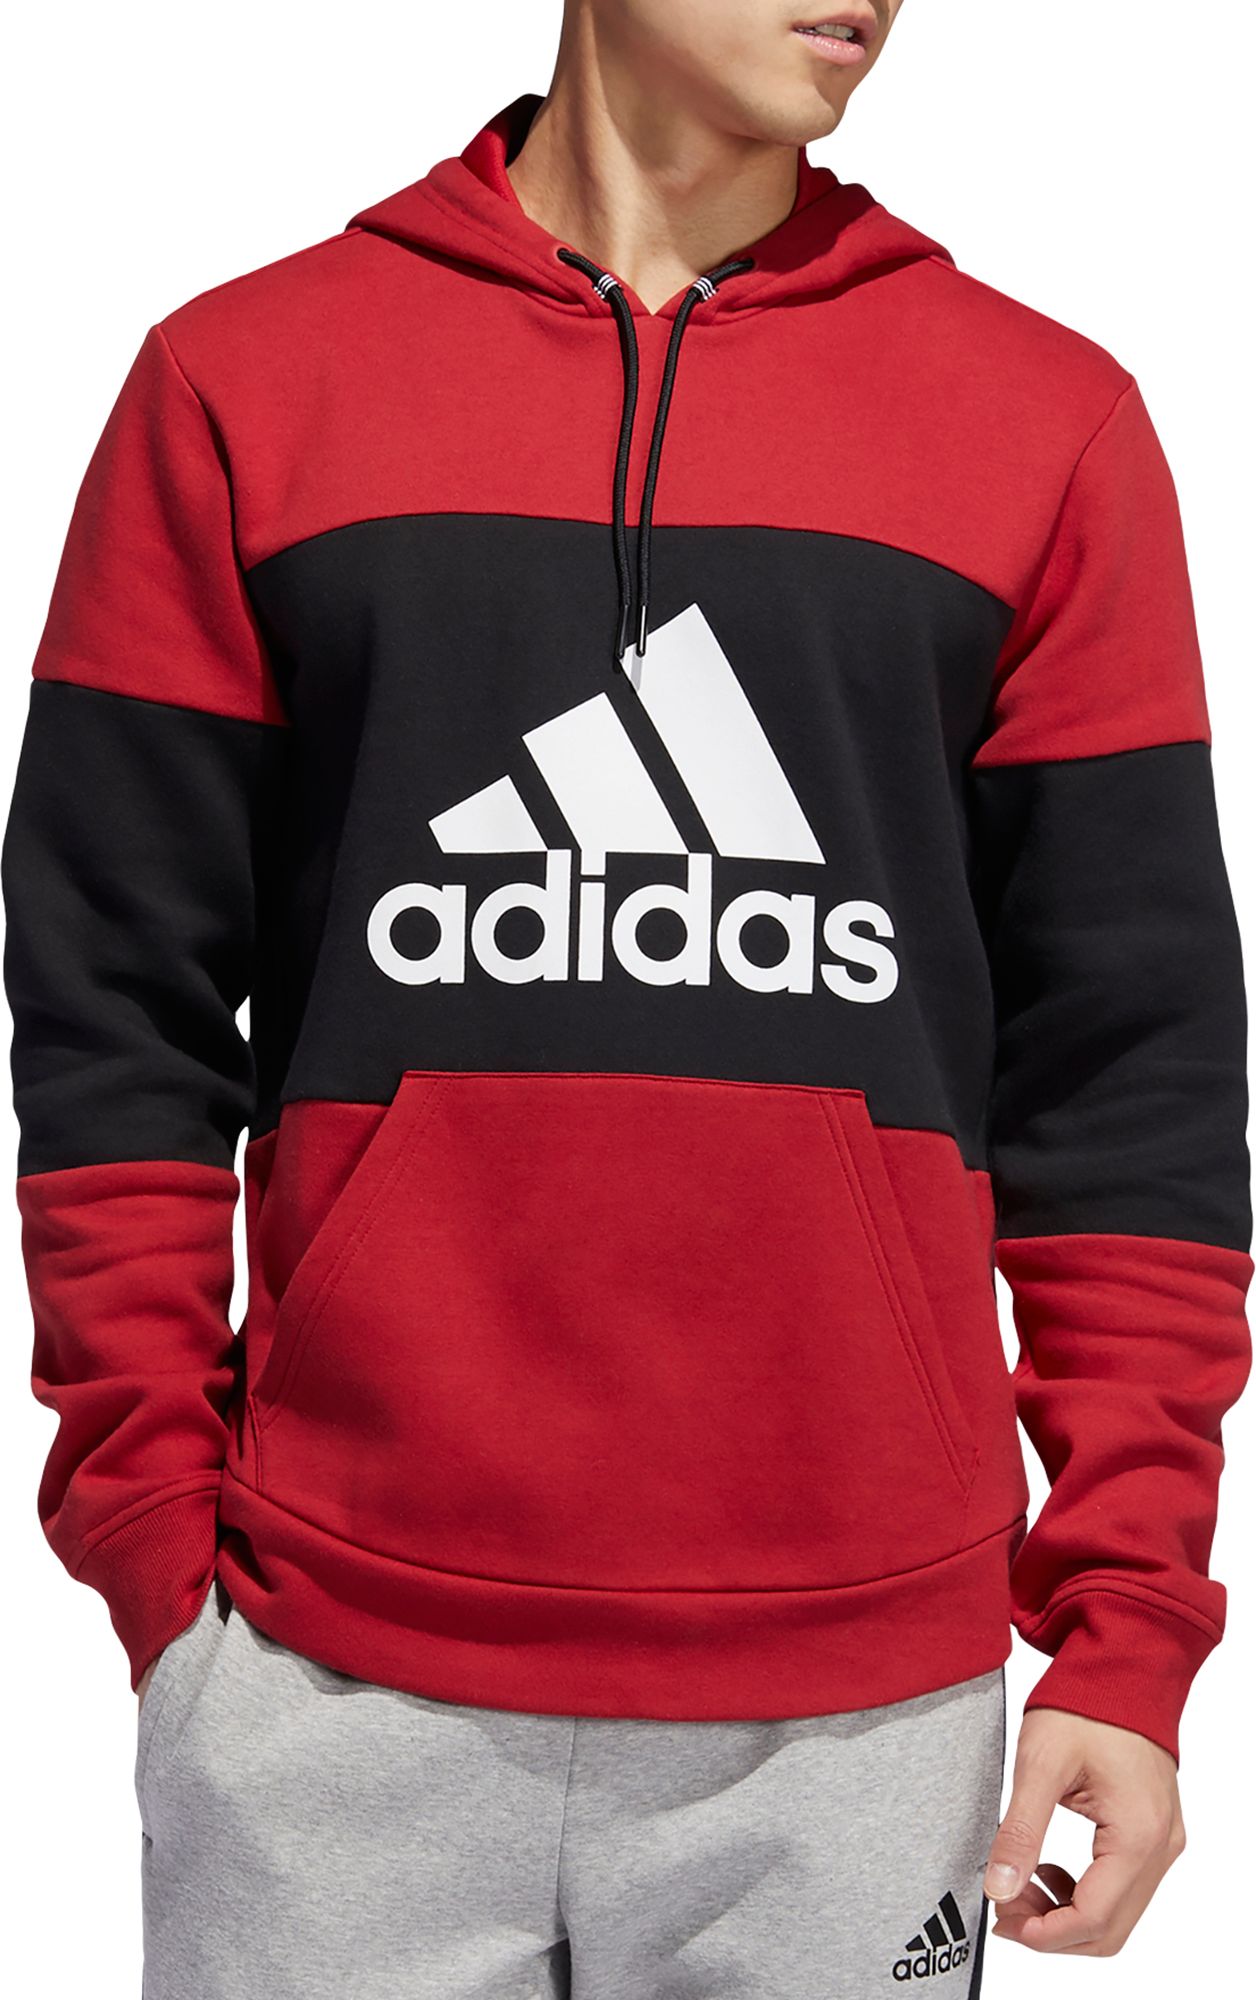 adidas dark red hoodie